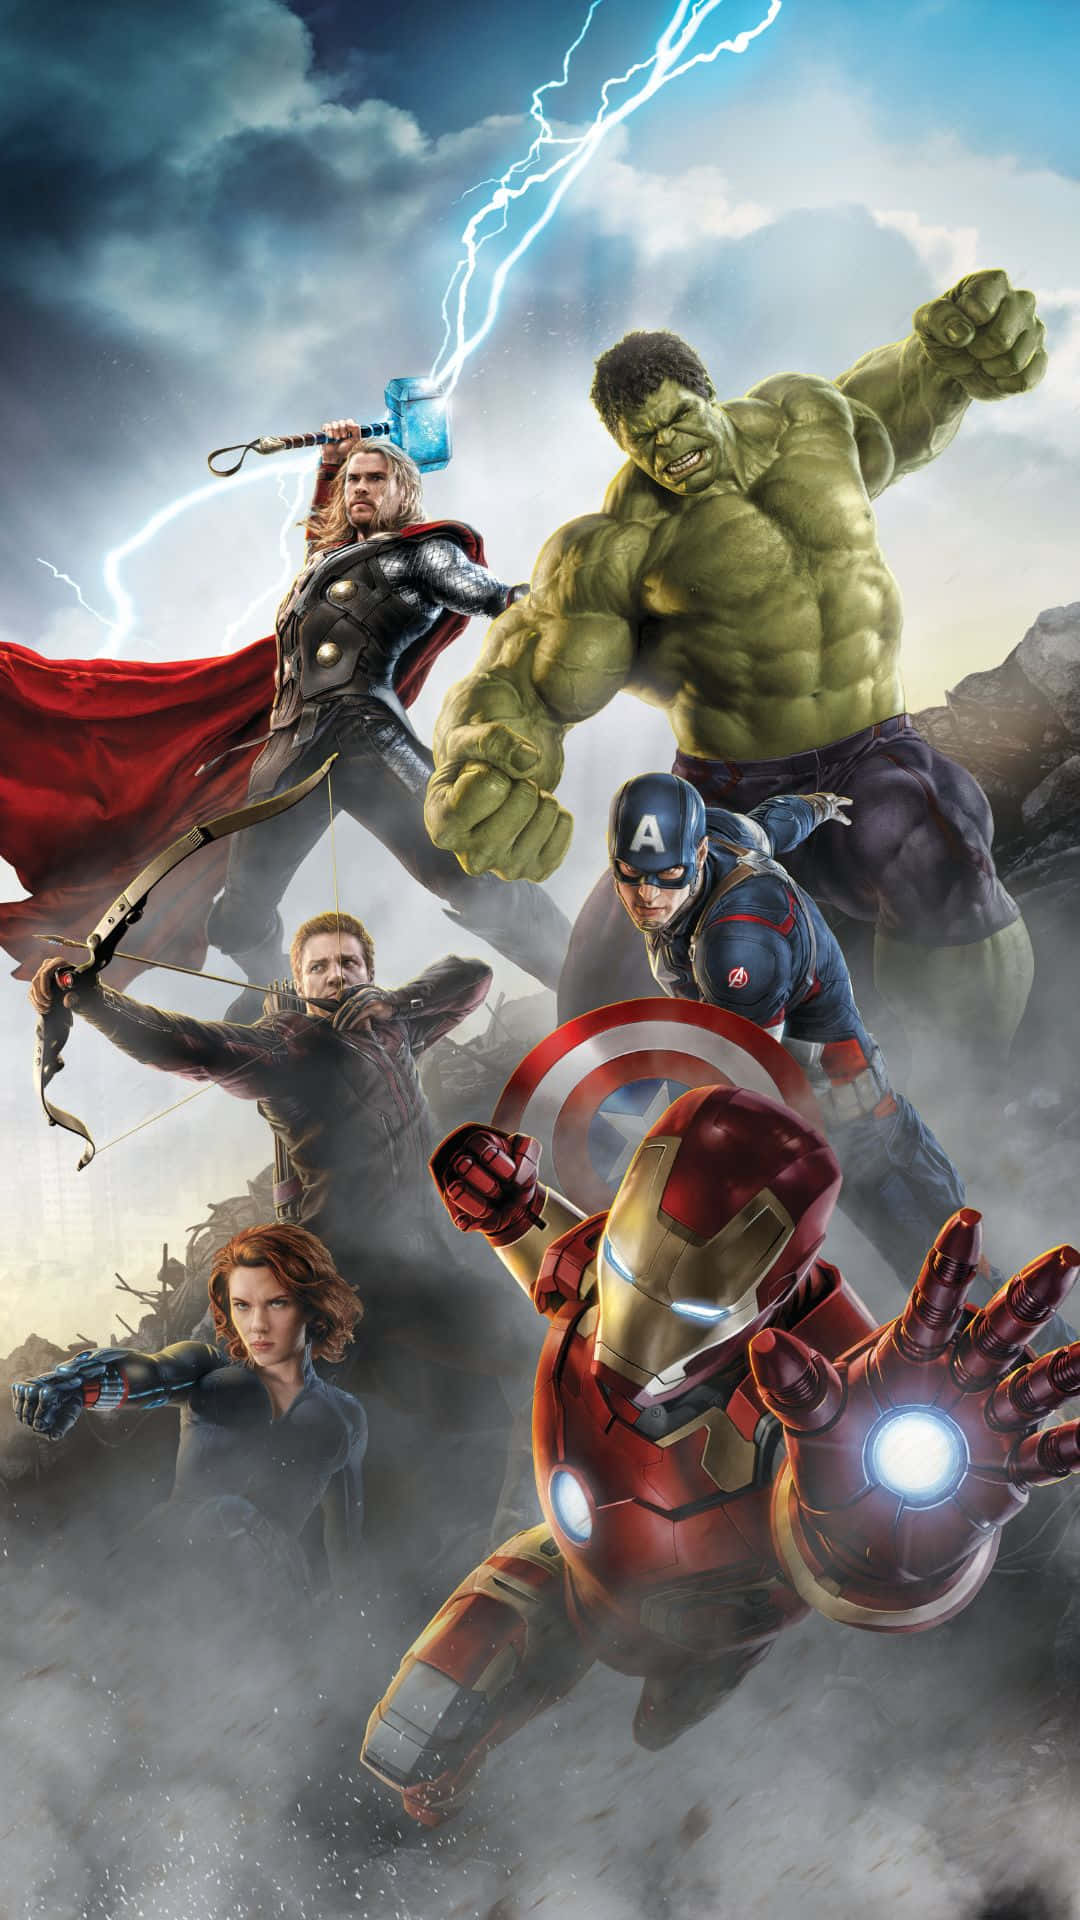 Posterdi Android Marvel's Avengers Sfondo Di Avvio Degli Avengers Con Effetto Fumo